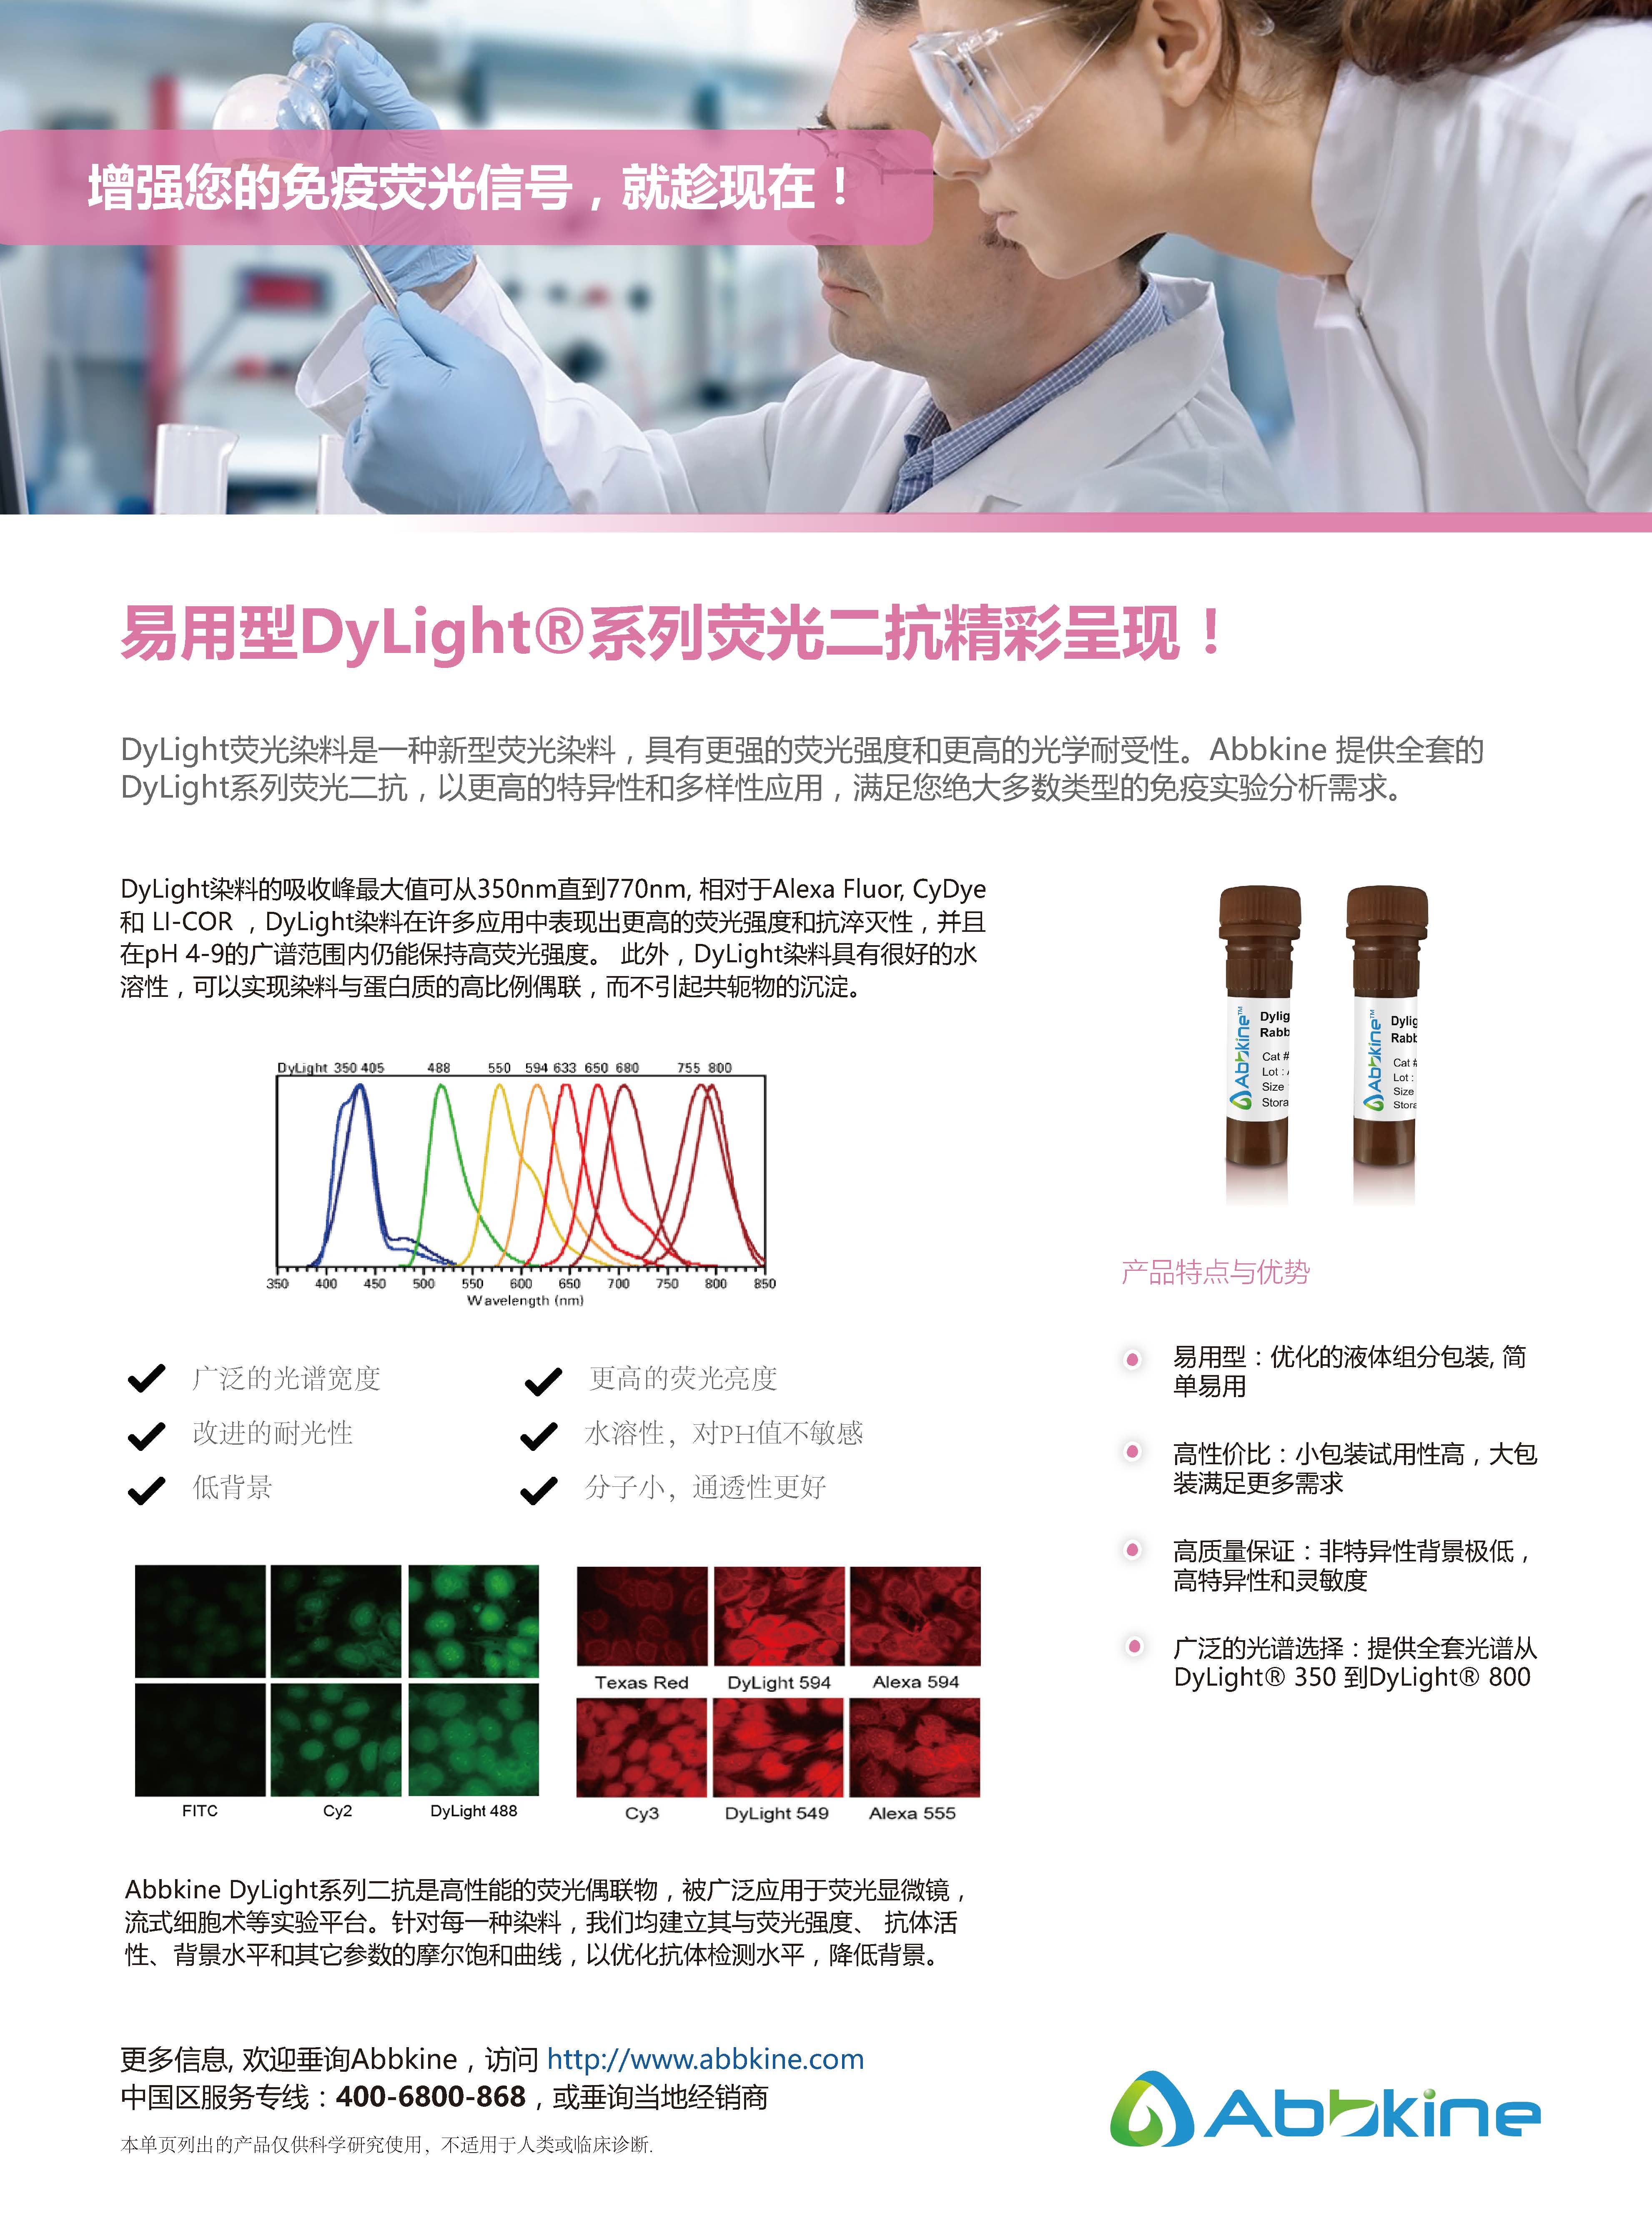 DyLight 系列荧光二抗-产品手册